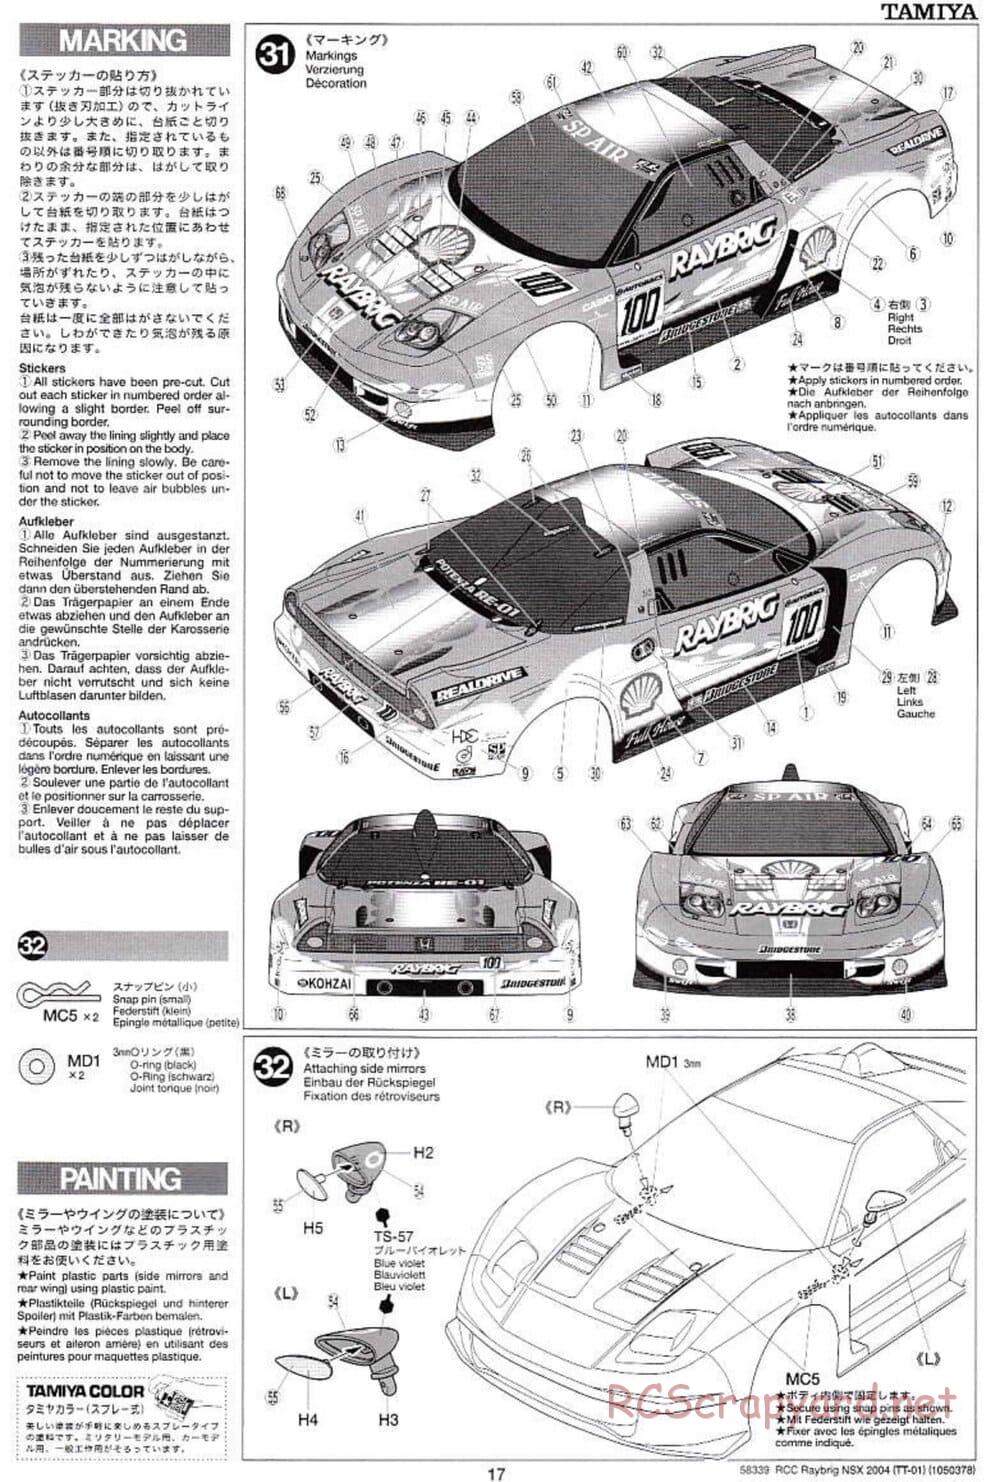 Tamiya - Raybrig NSX 2004 Chassis - Manual - Page 17